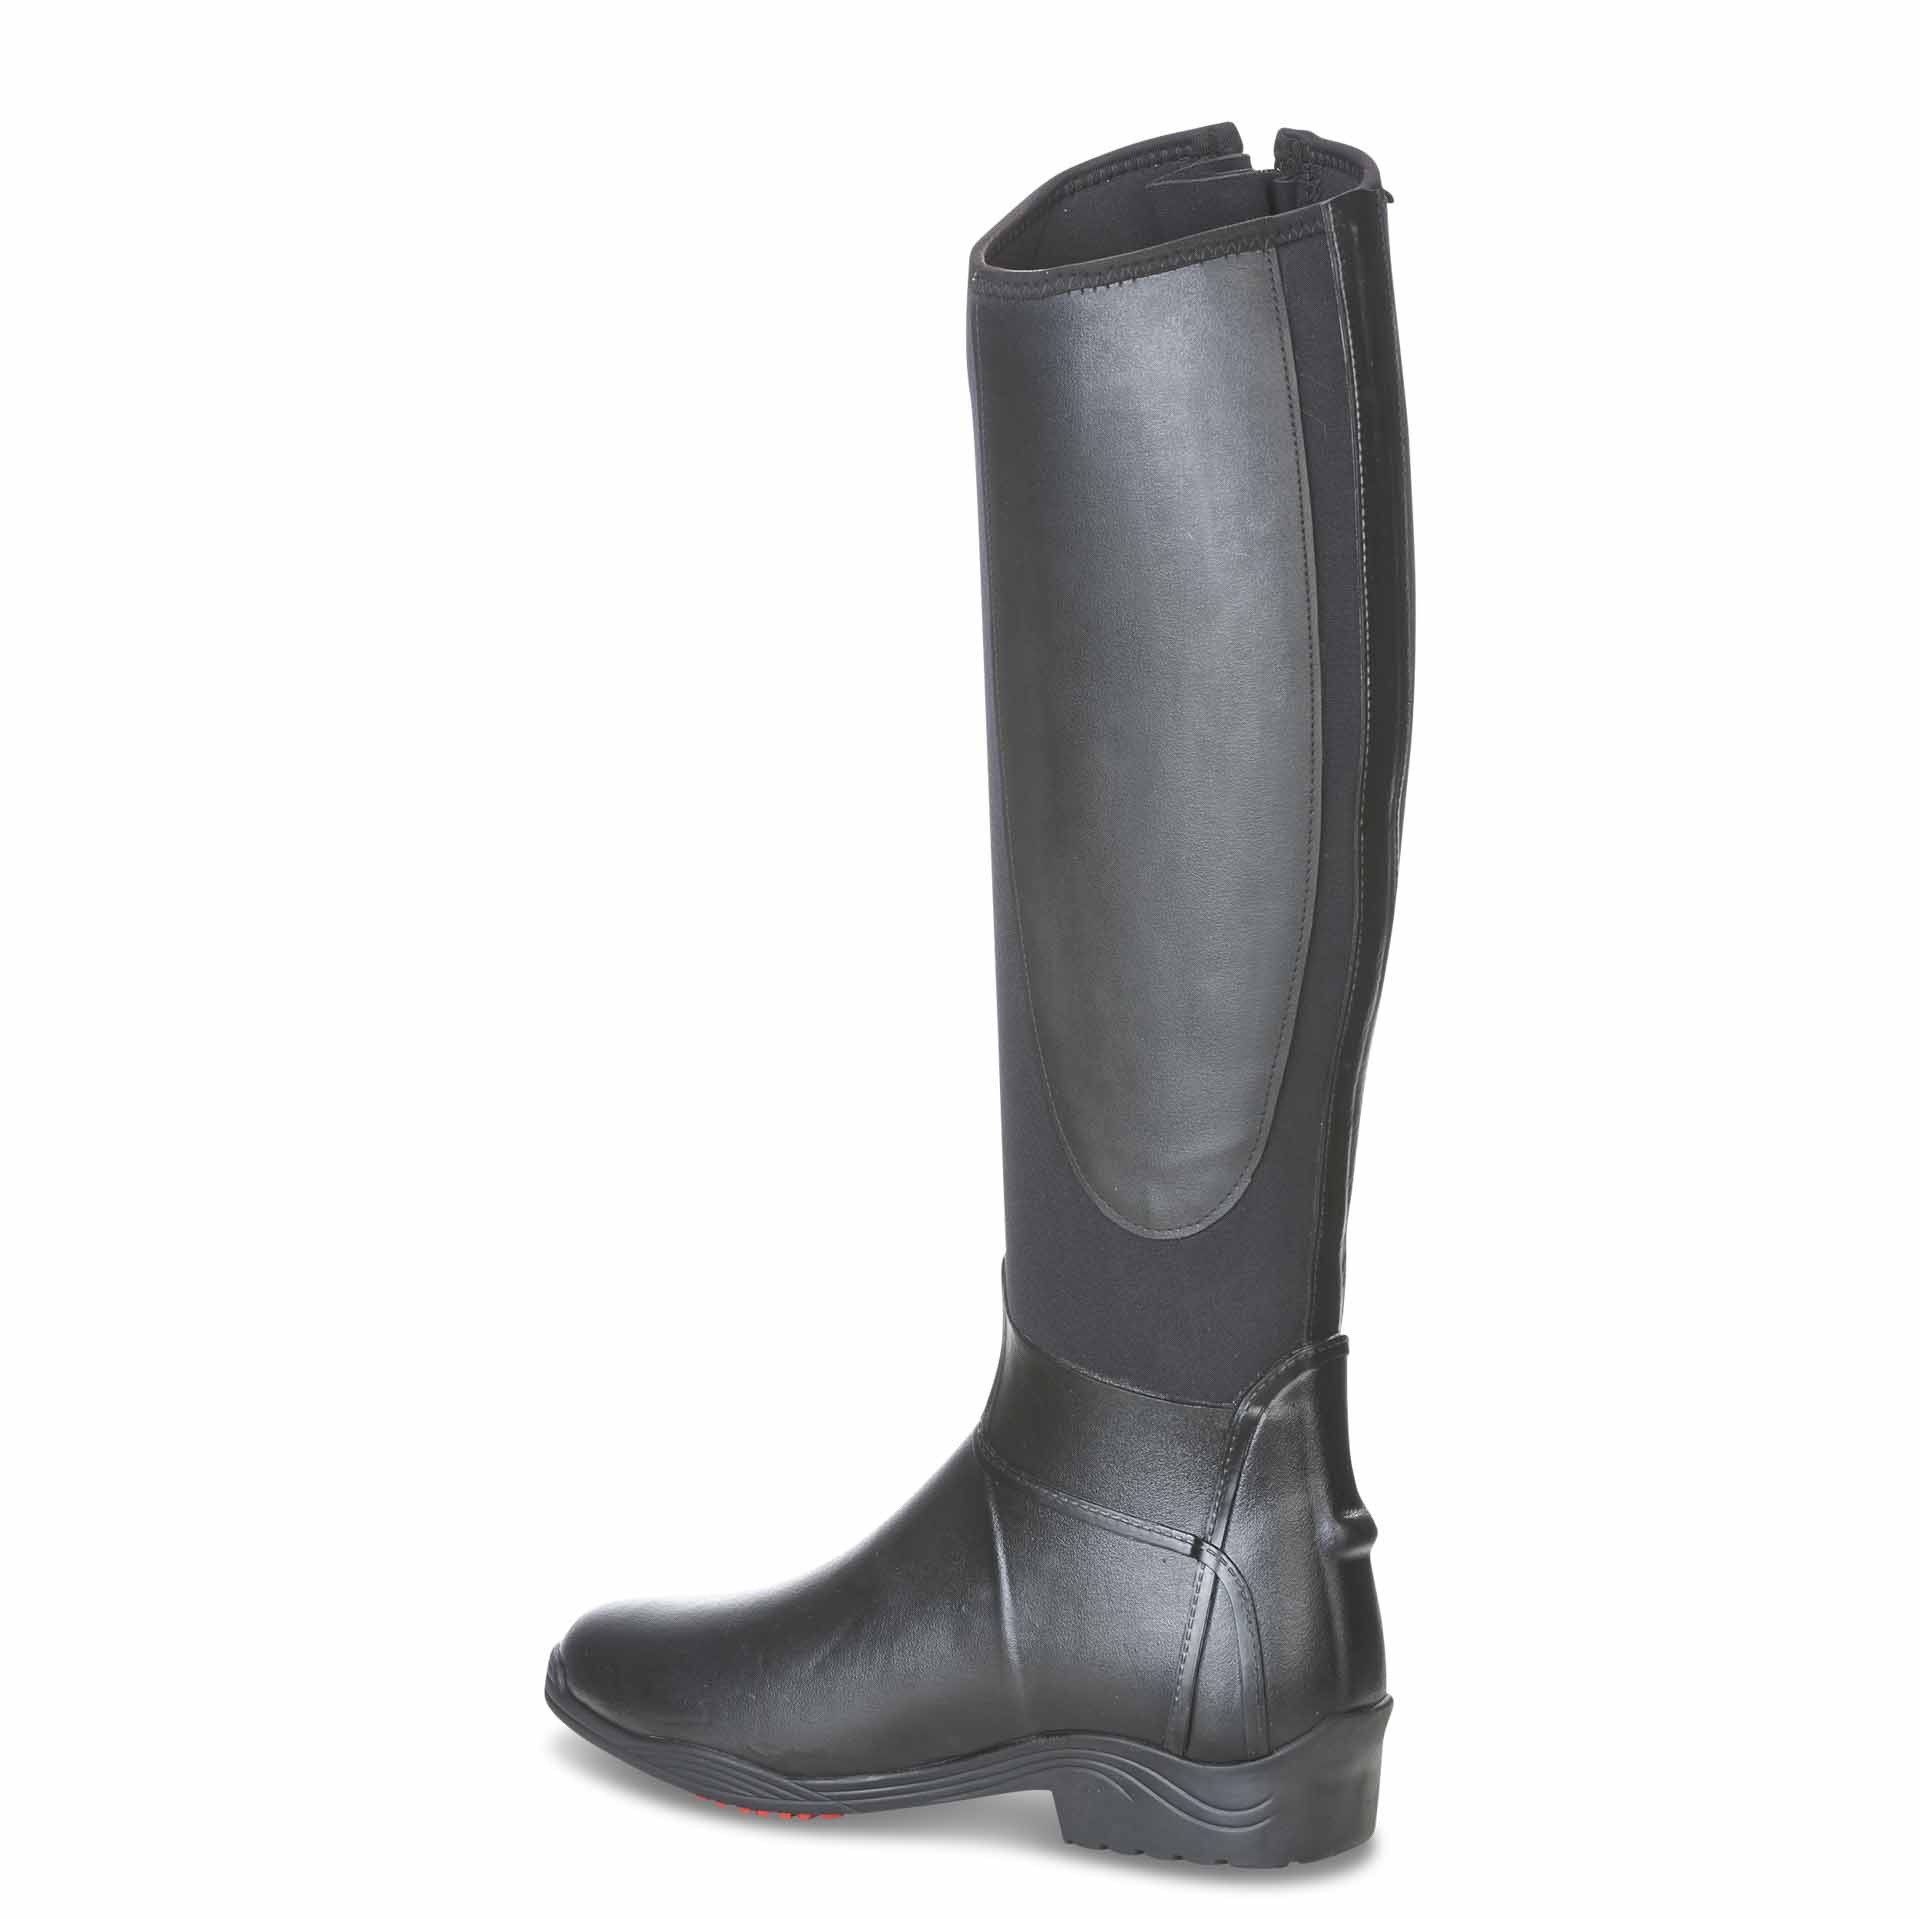 Boots d'équitation mud BUSSE CALGARY, noir